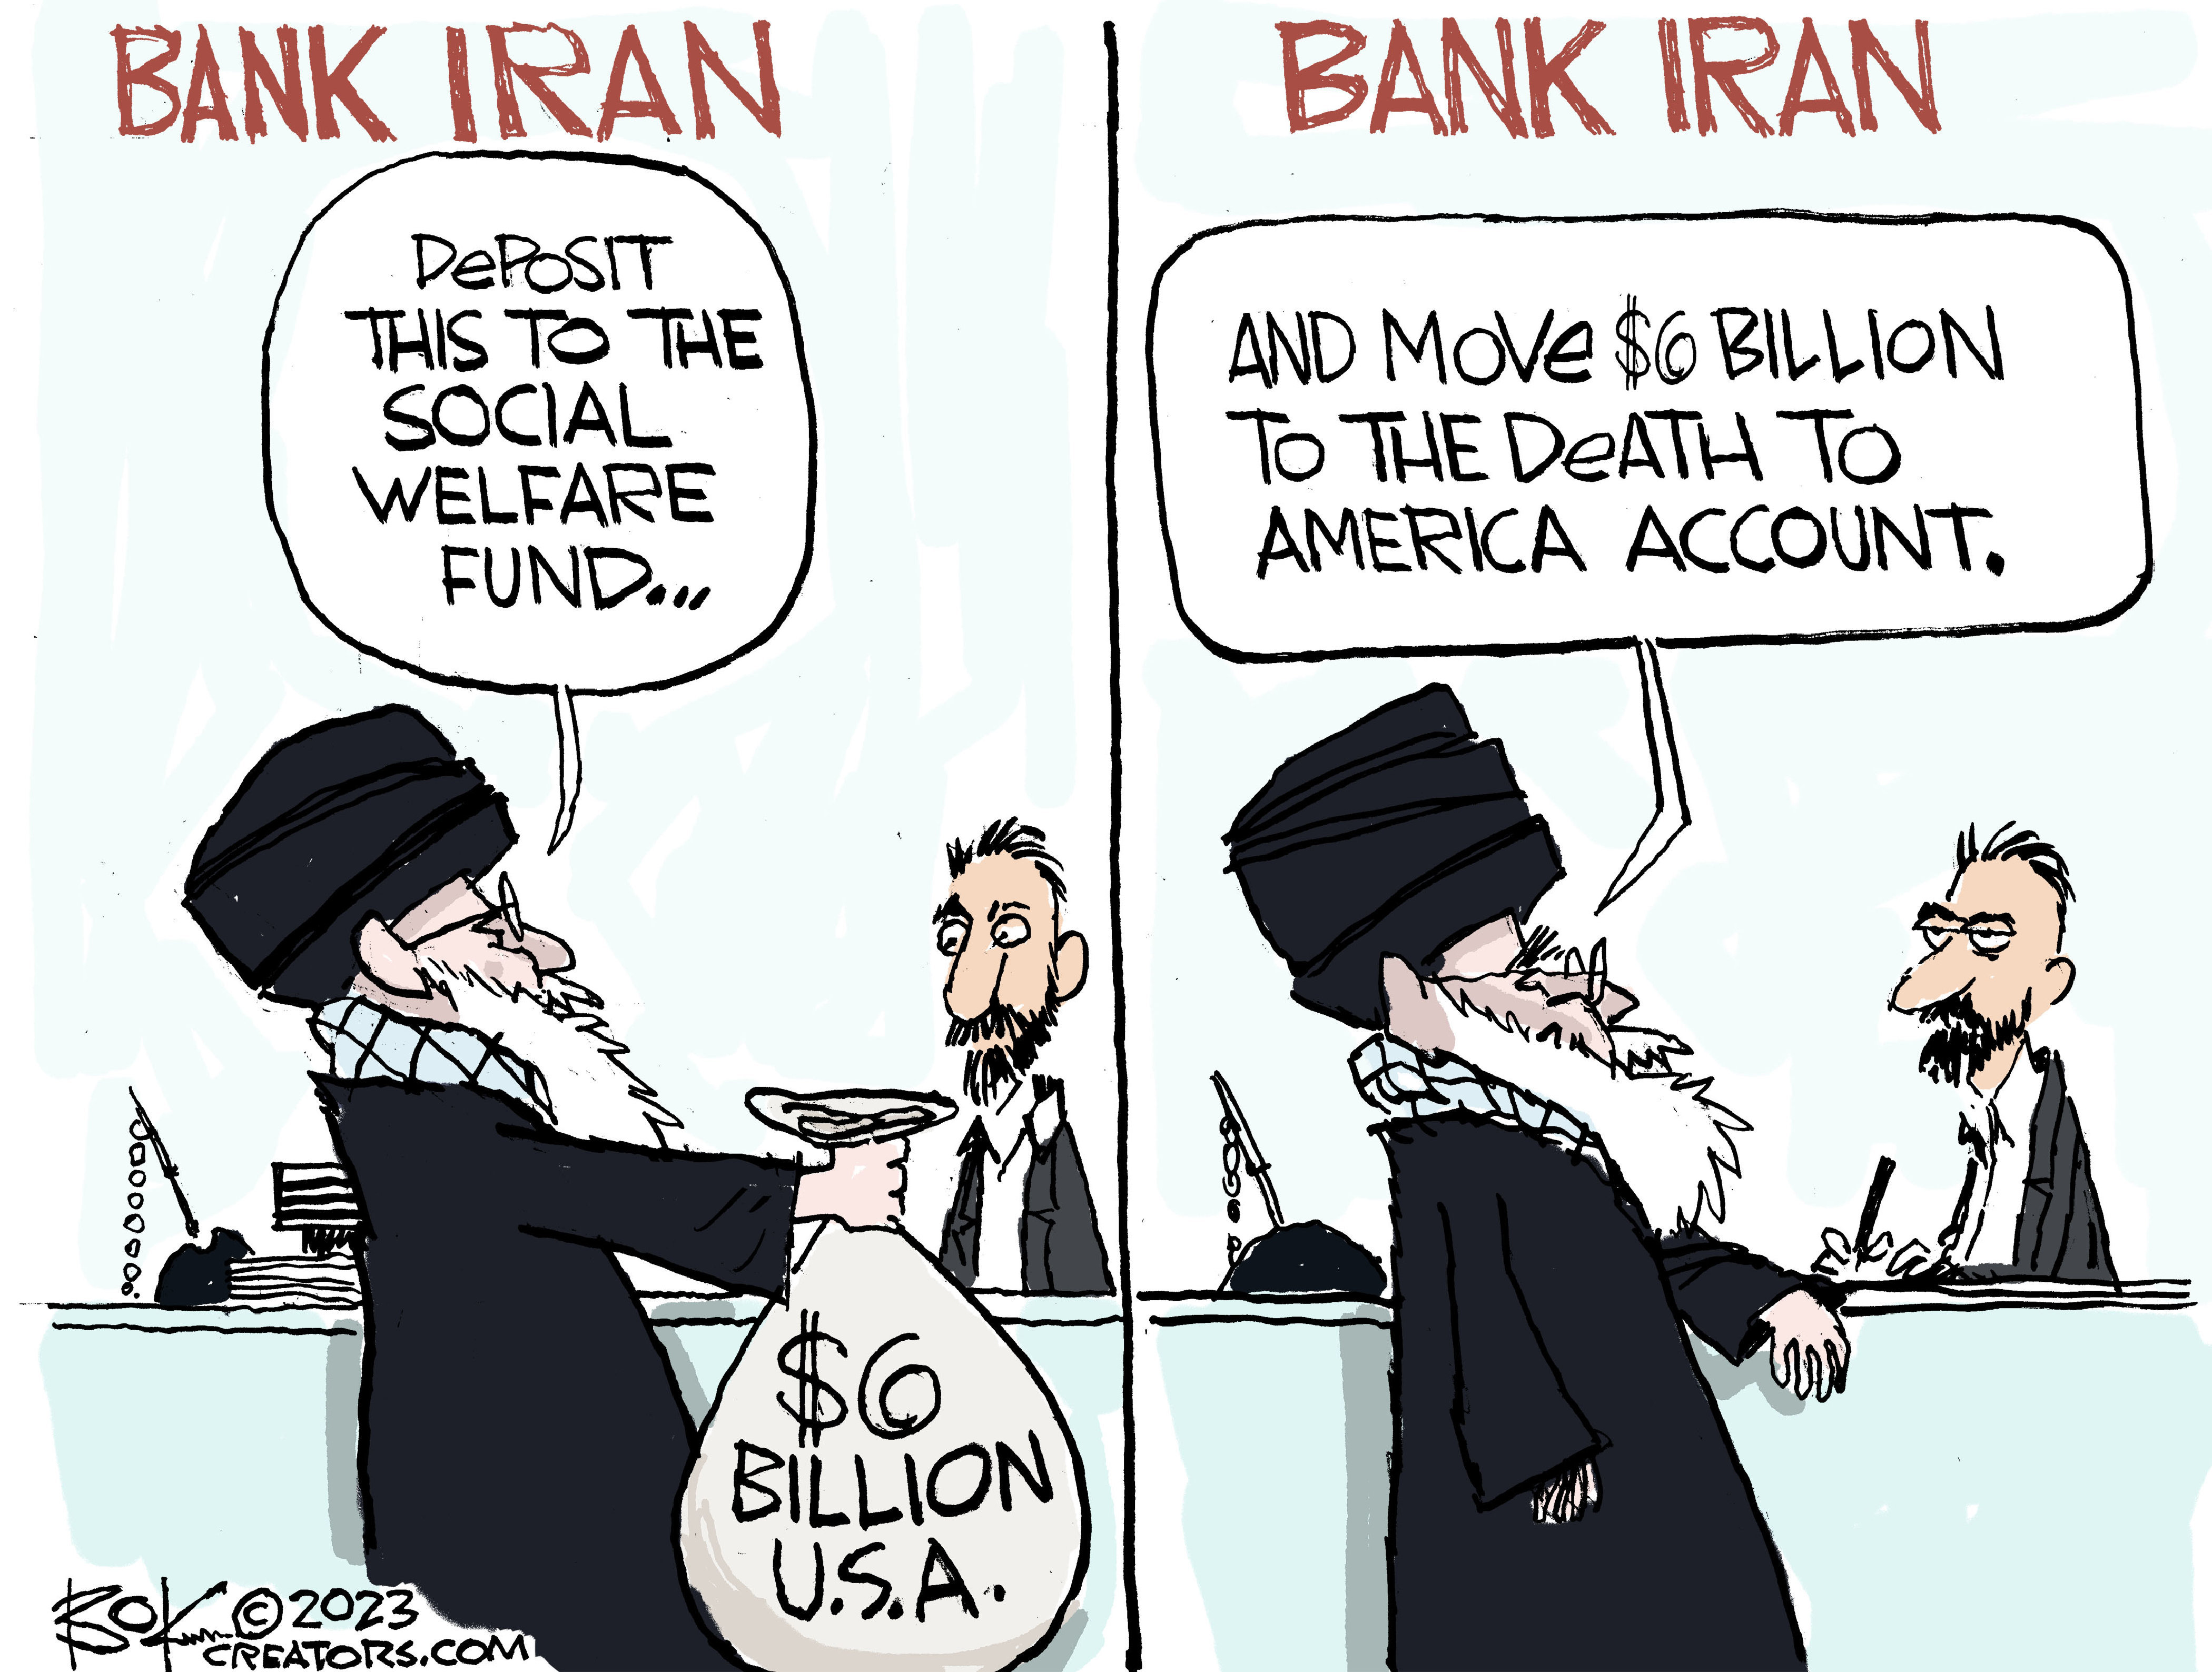  Iran deposit 